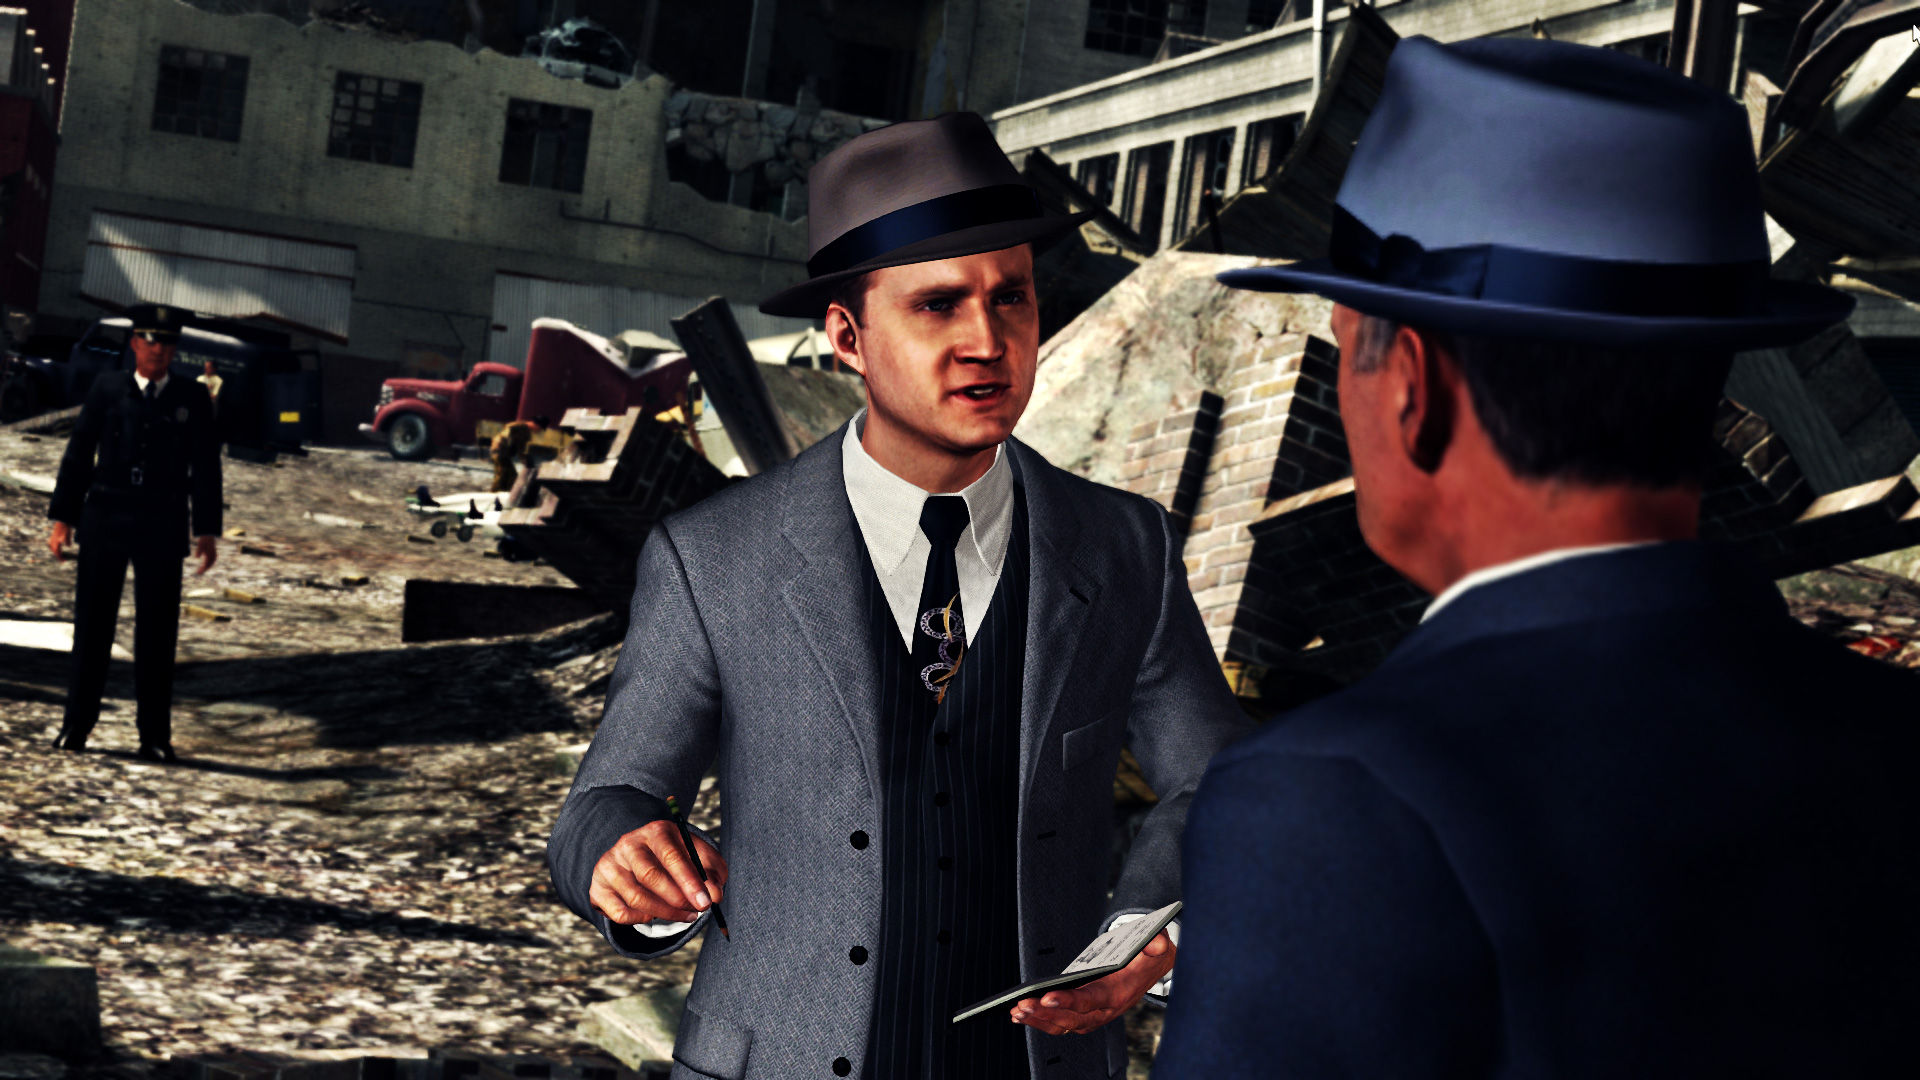 Korrekt Lige retort Save 70% on L.A. Noire on Steam